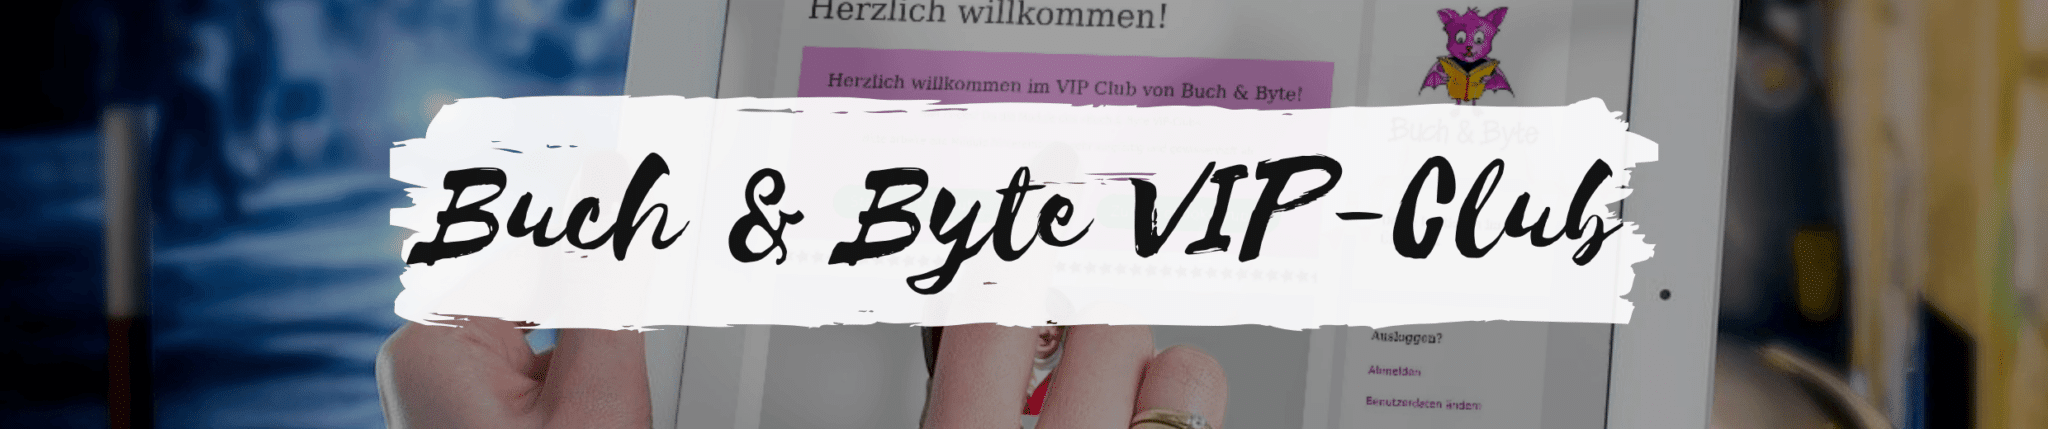 Buch & Byte VIP-Club